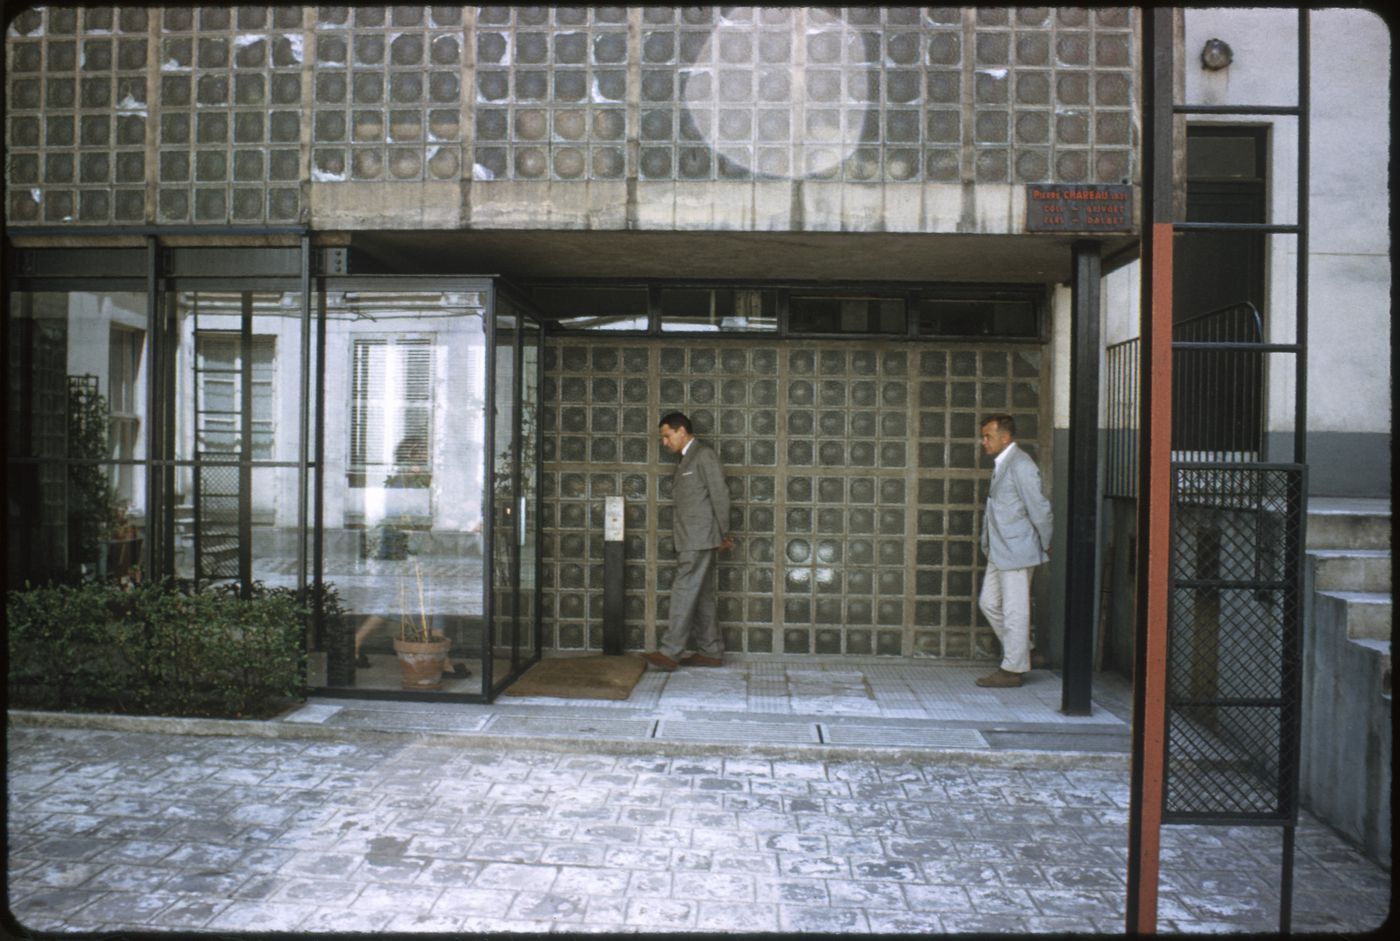 Colin Rowe and David Crowe at the Maison de Verre, Paris